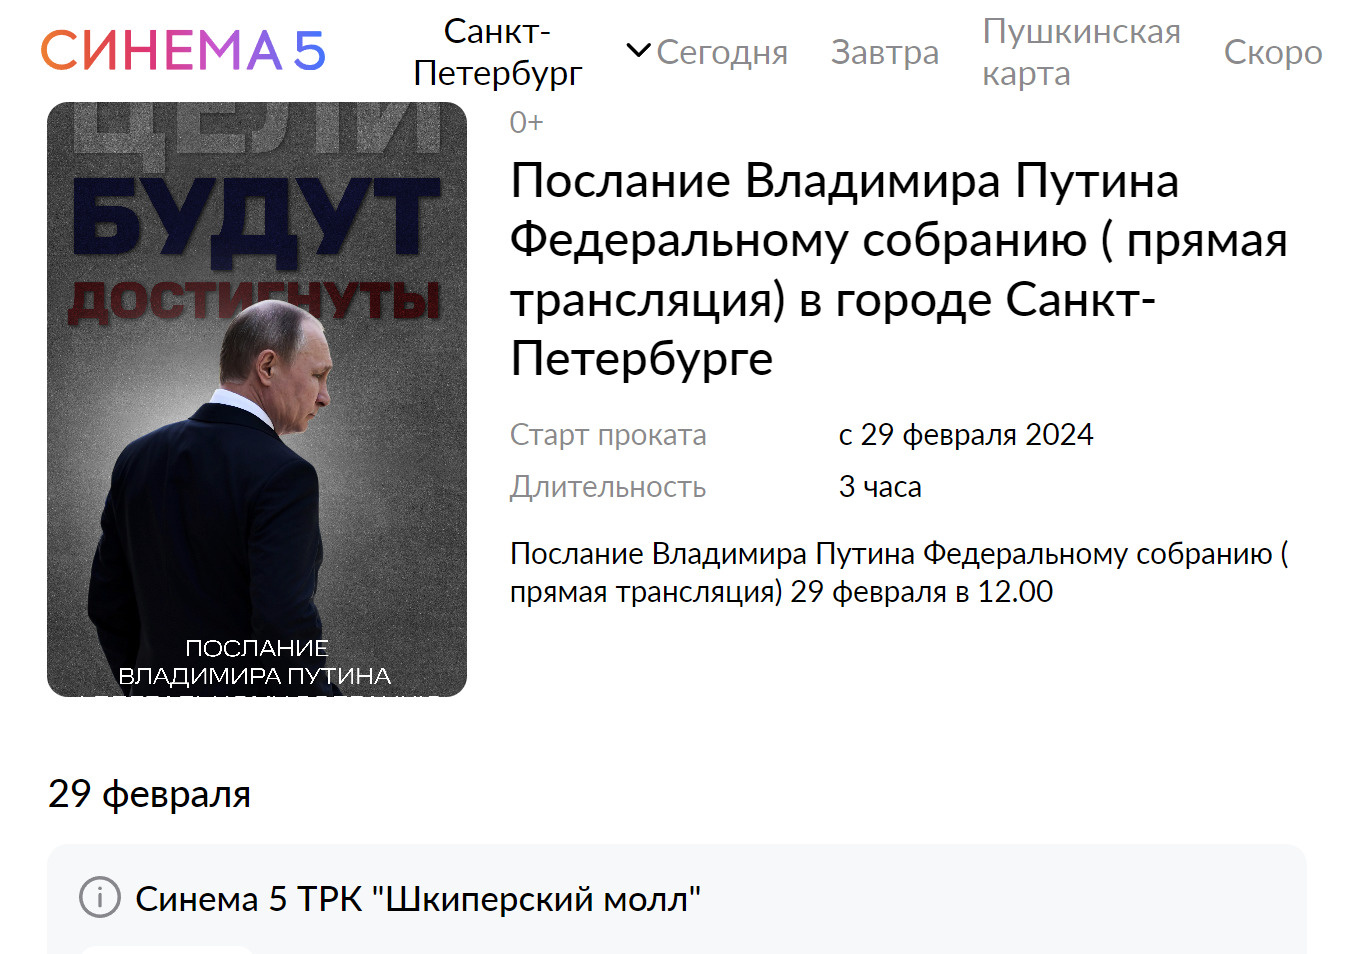 Путин в кино. Послание президента Федеральному собранию покажут в кинотеатре Петербурга и еще в 16 городах